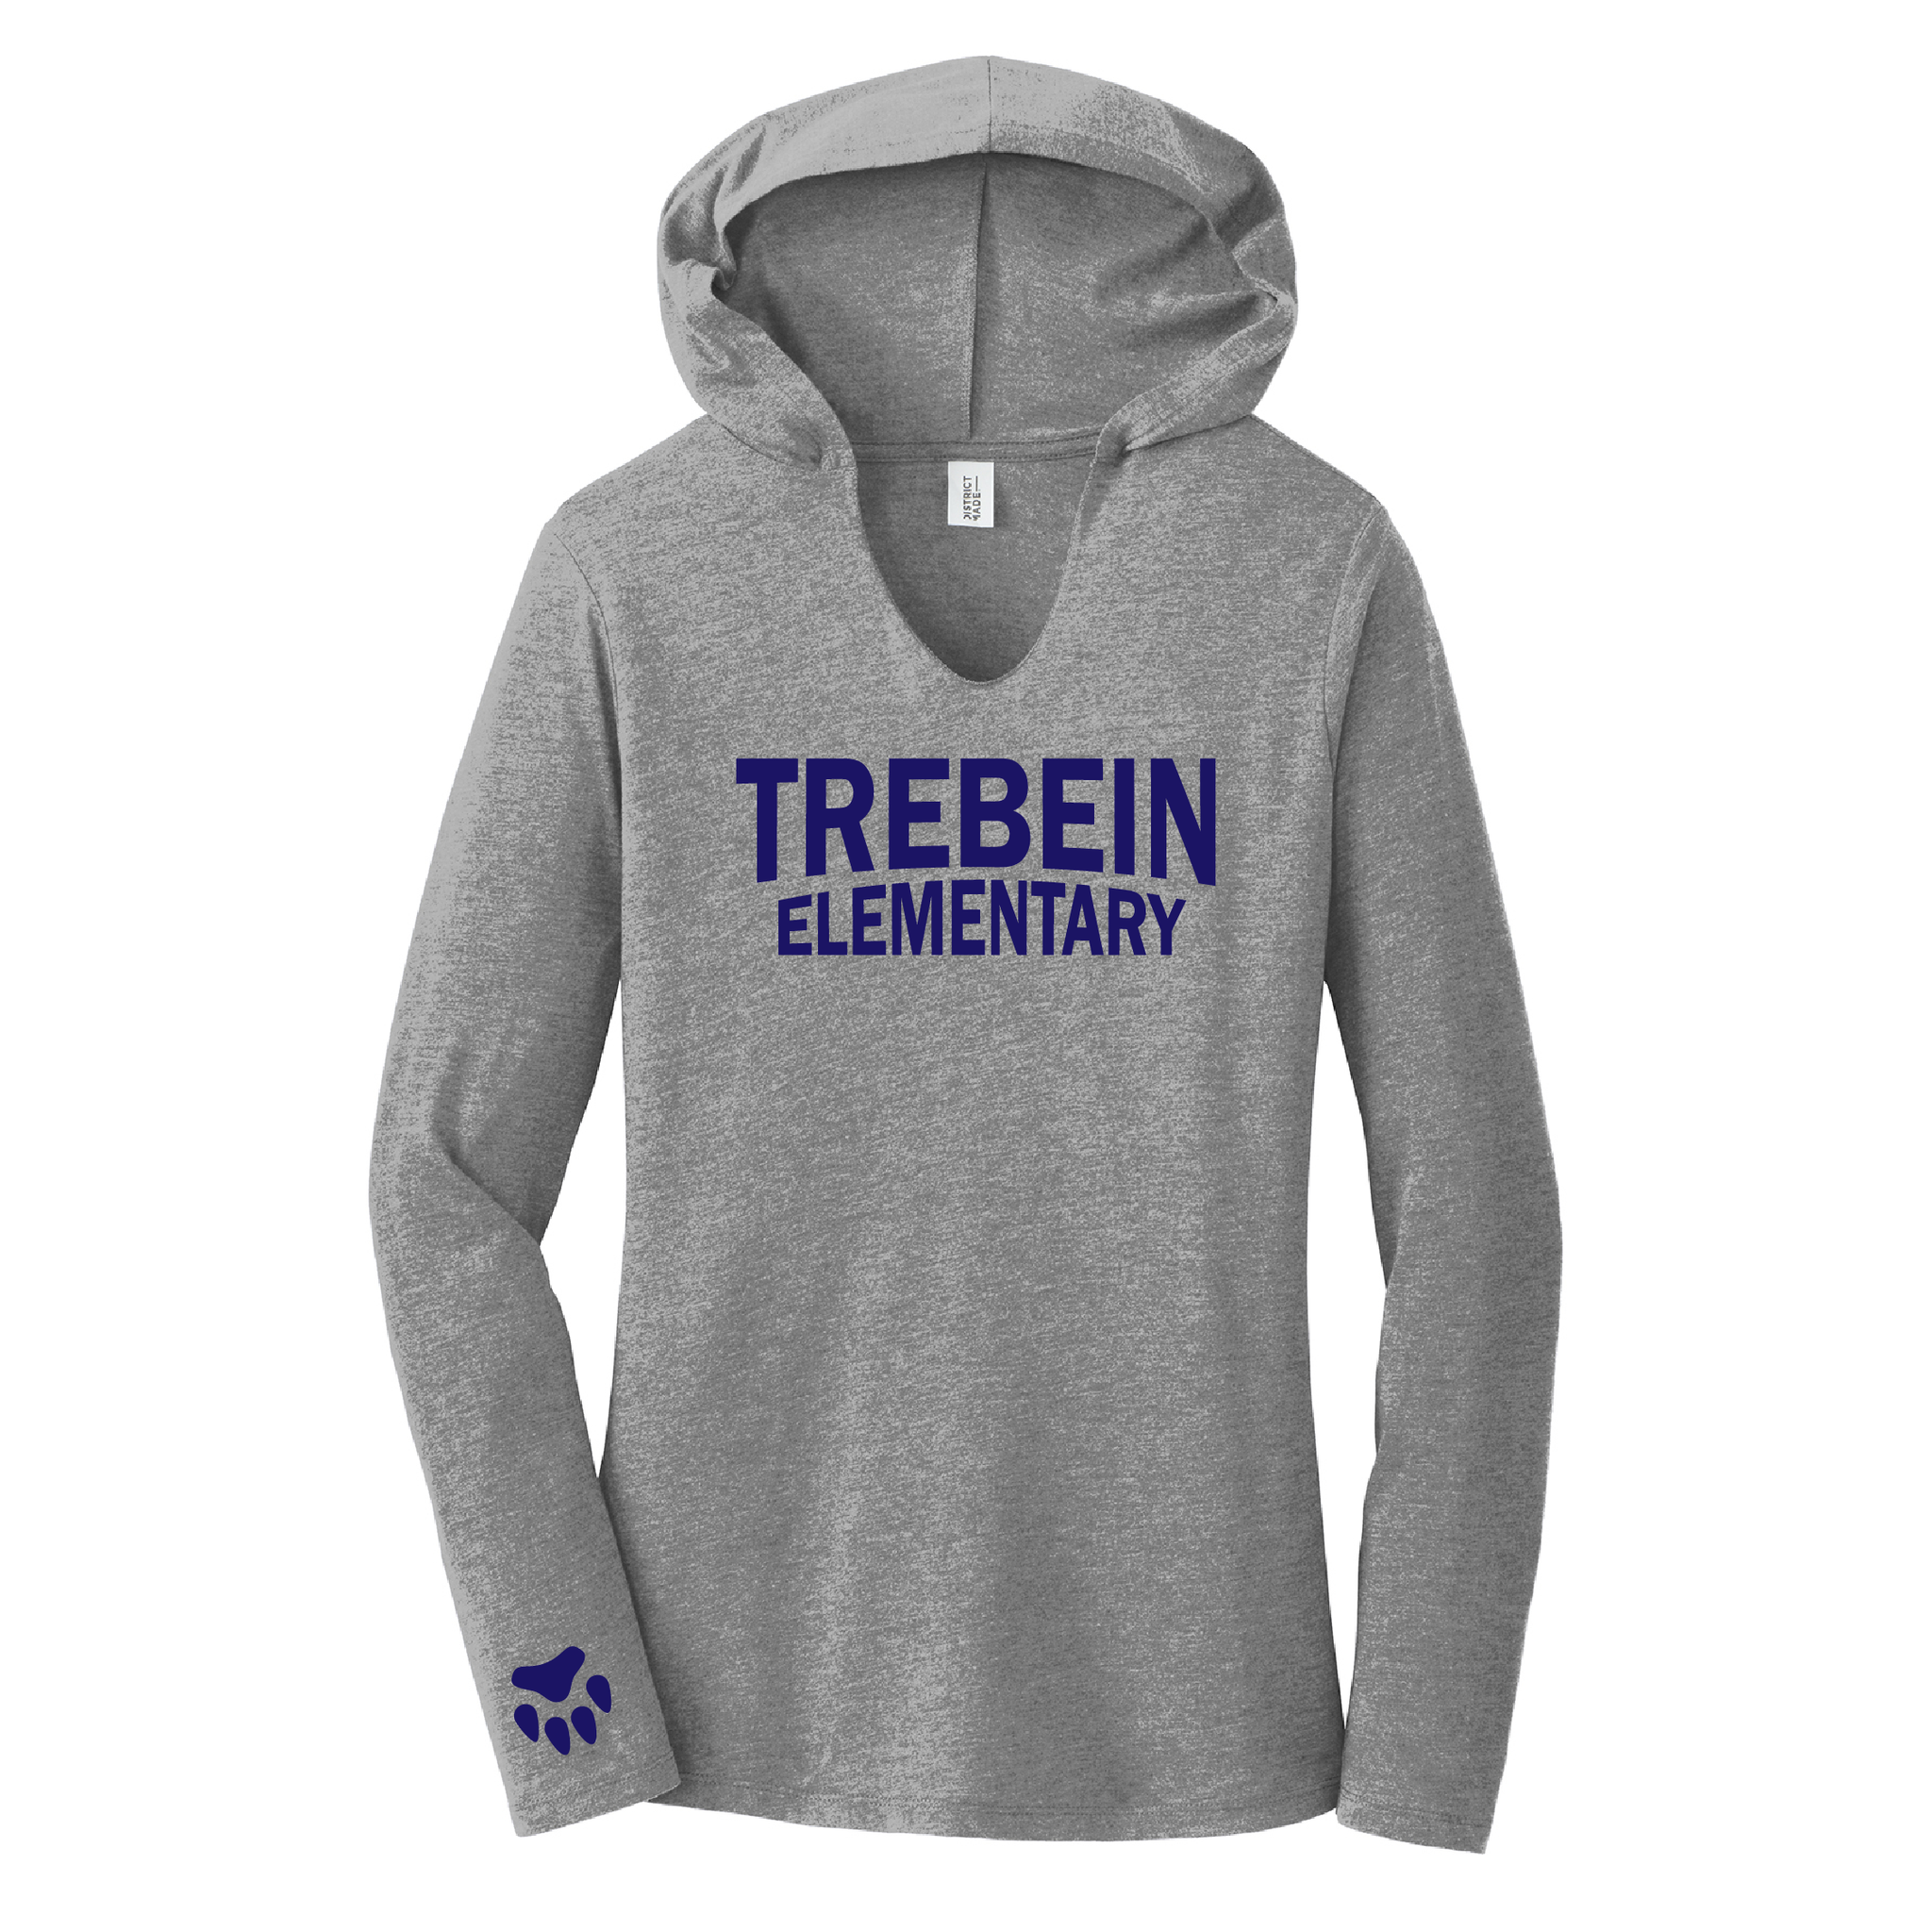 Trebein Elementary Ladies Tri-Blend Long Sleeve Hoodie